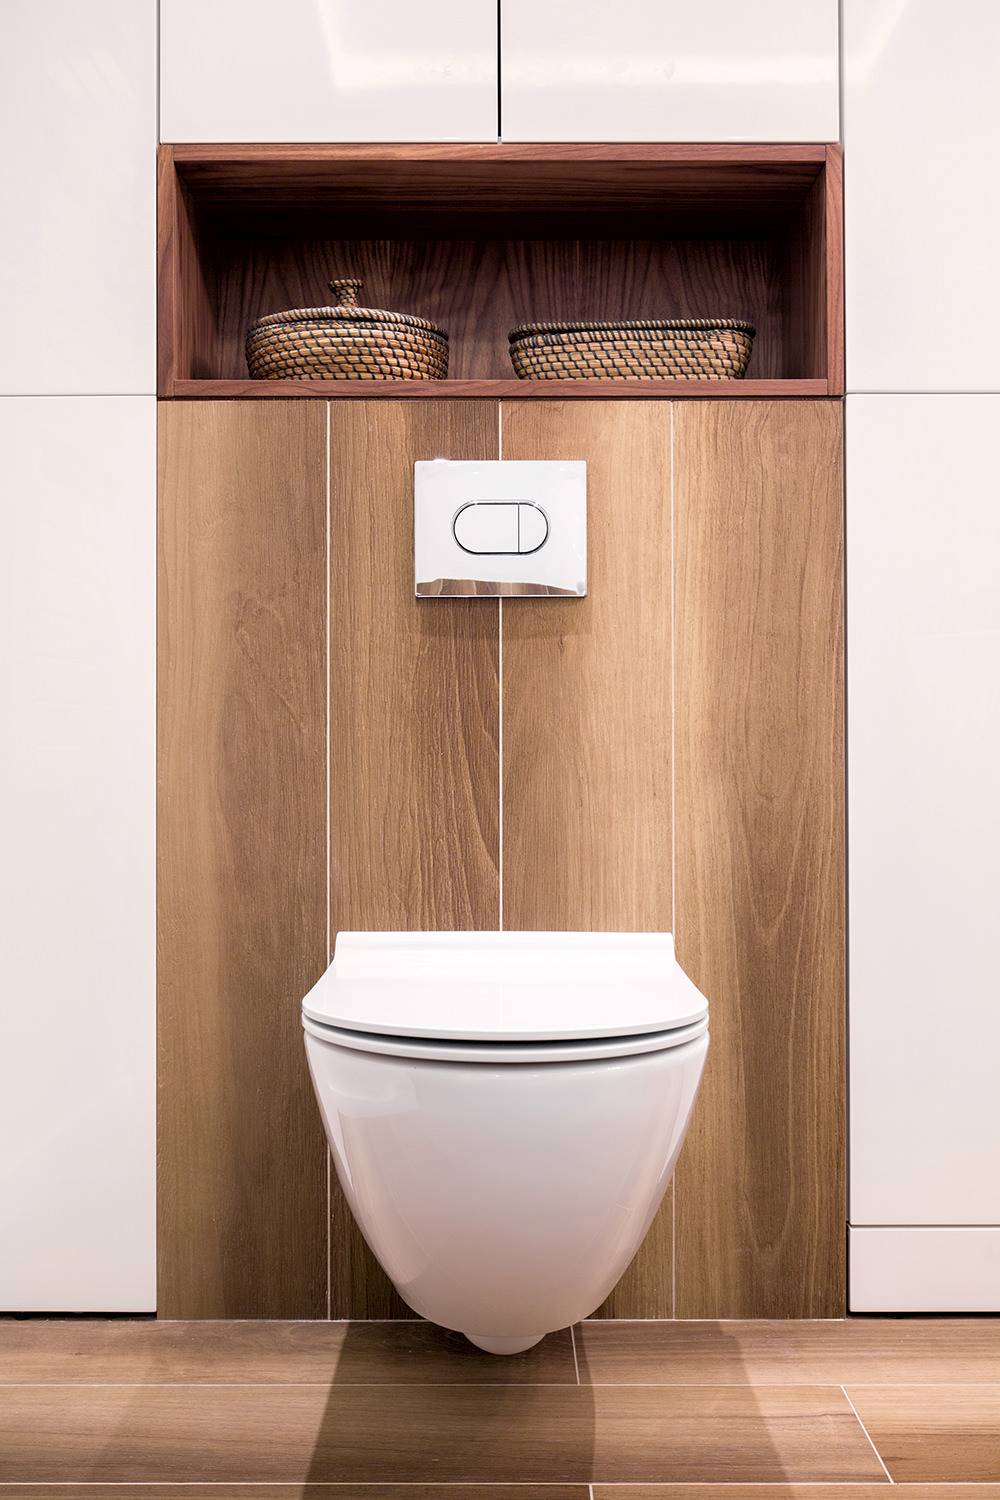 Ambiance élégante et moderne dans la salle de bain avec un siège de toilettes moderne.